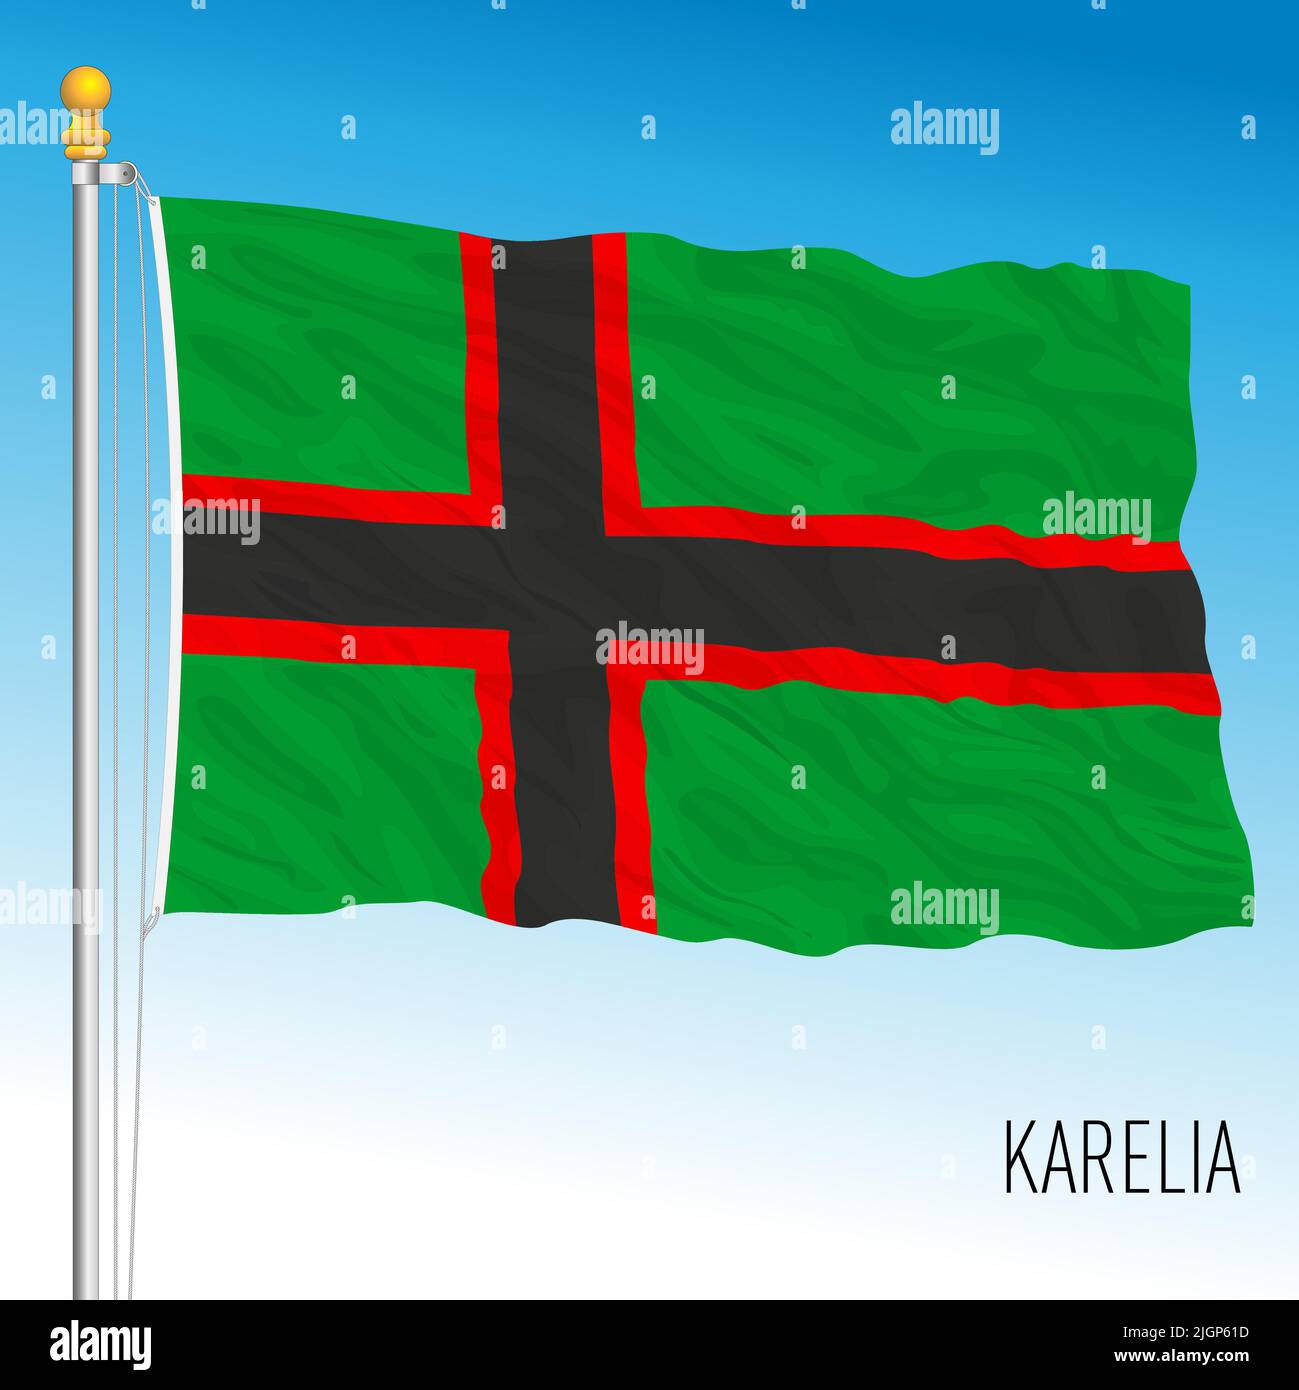 Bandera del territorio de Karelia, norte de europa, ilustración de vectores Ilustración del Vector